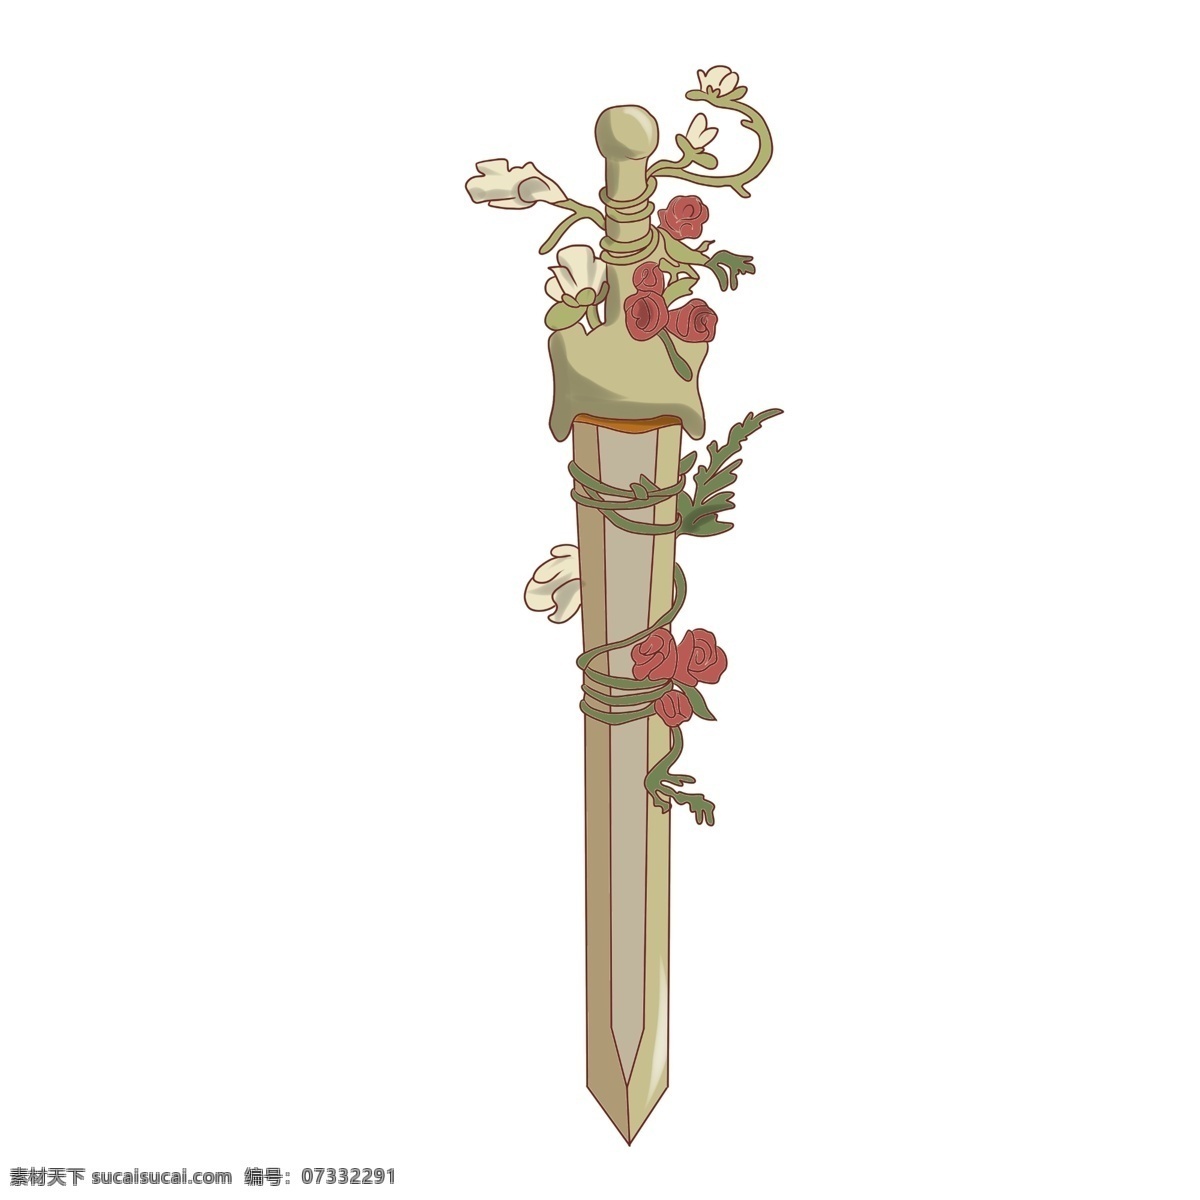 黄色 卡通 宝剑 插画 宝剑插画 黄色的宝剑 卡通宝剑插画 绿色的植物 红色的花朵 精美的宝剑